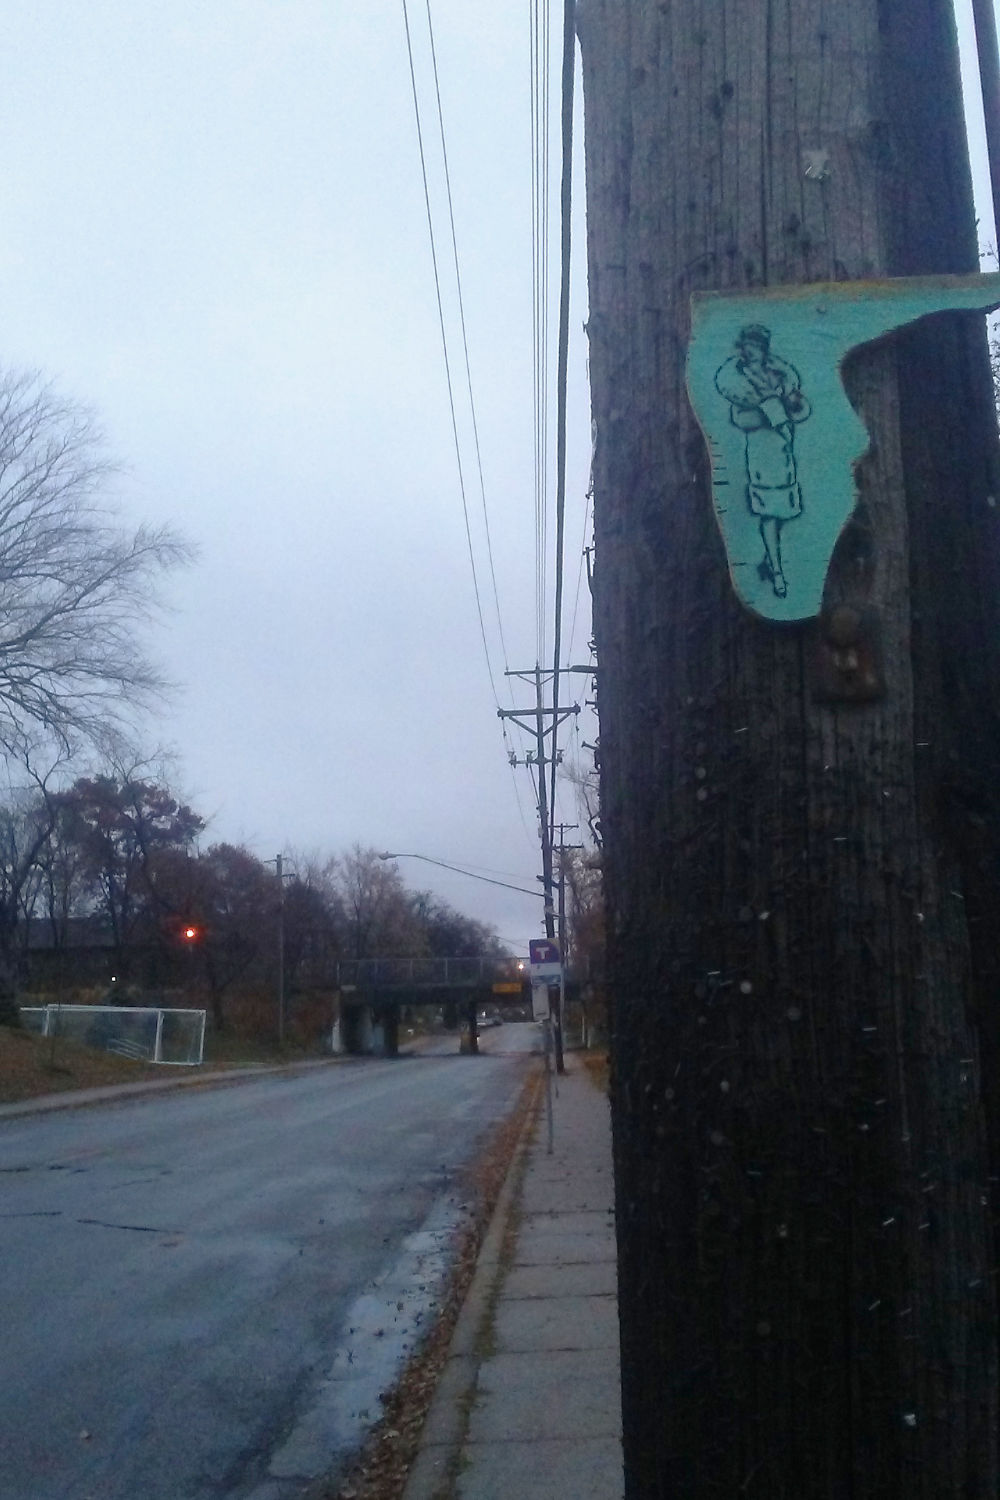 Sketch of woman in winterwear on metal on telephone pole